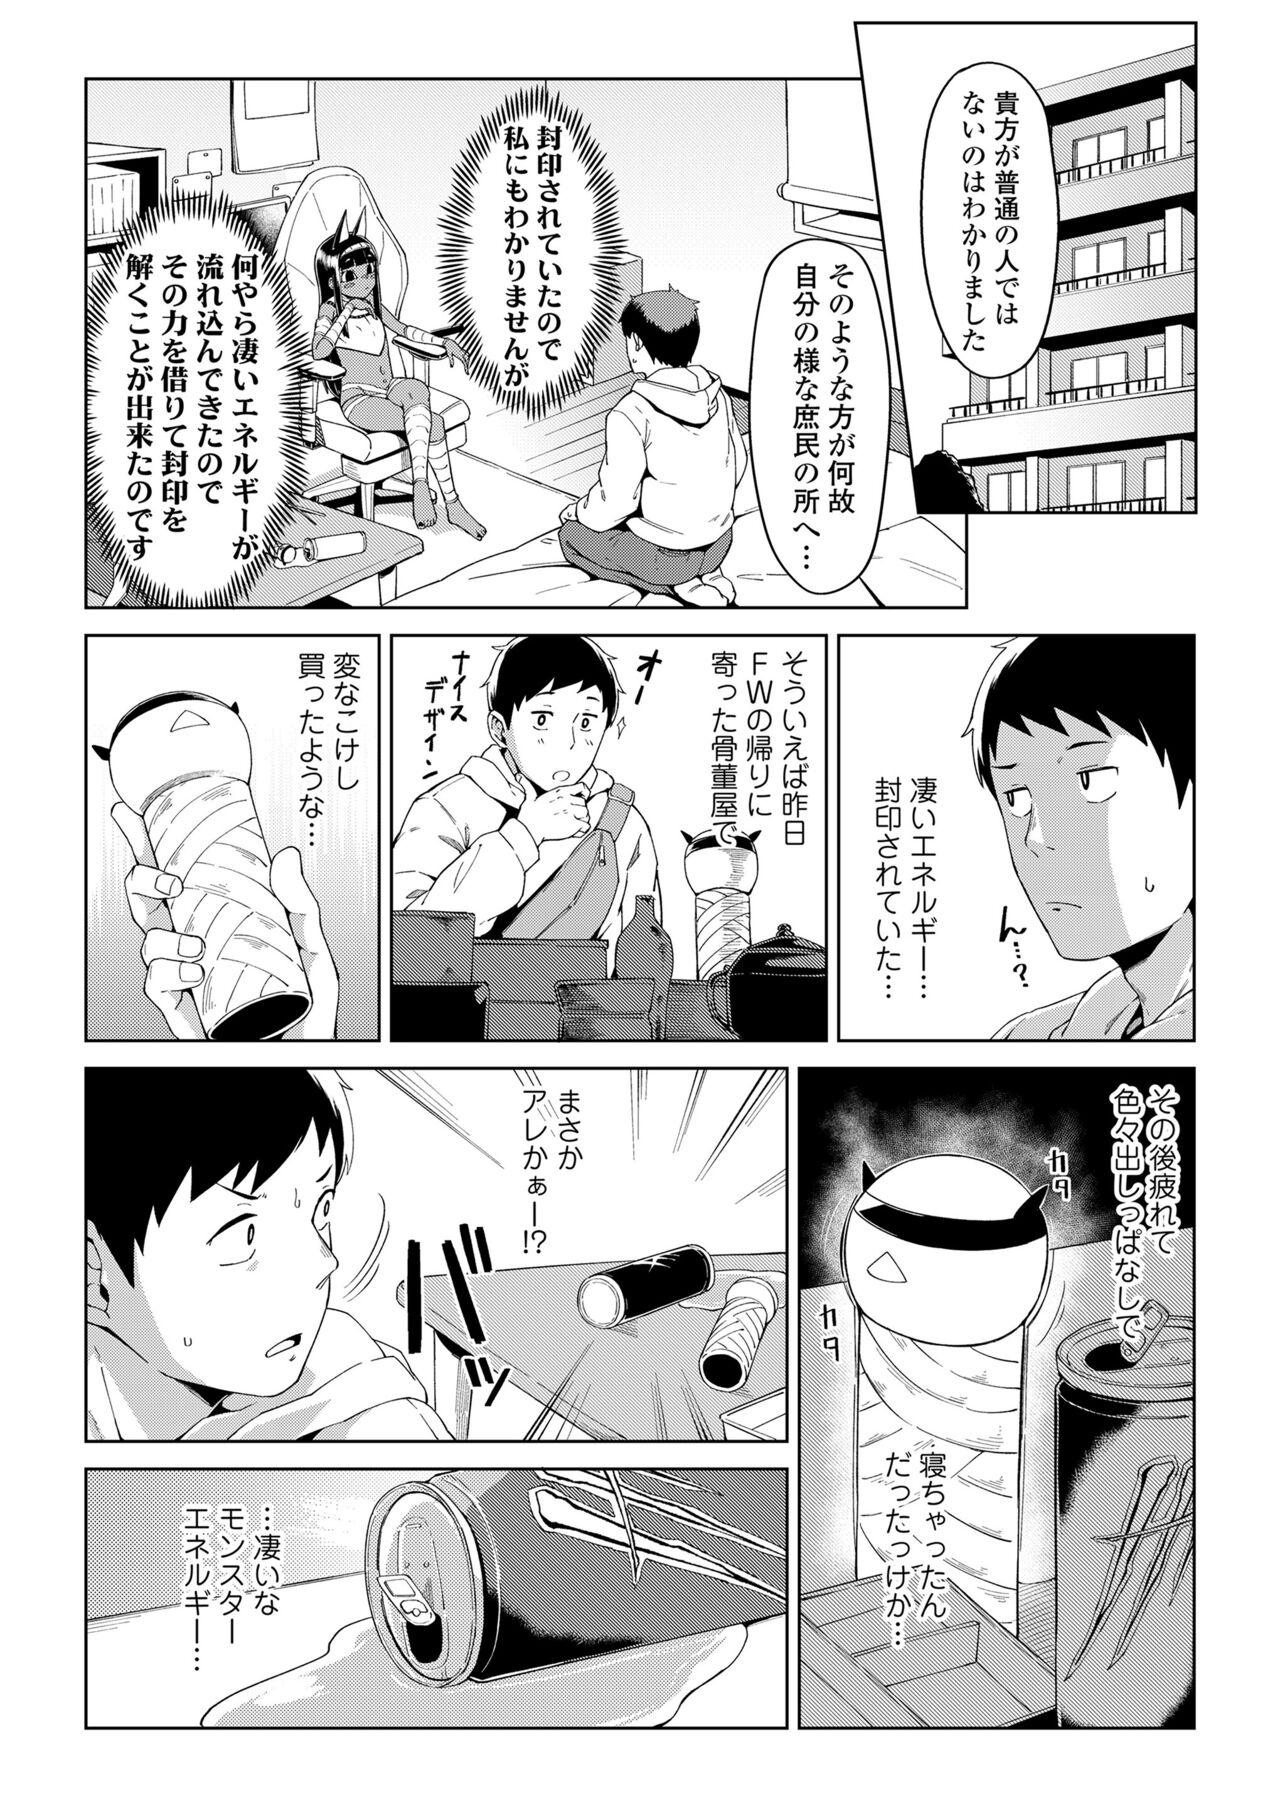 Leaked Towako Oboro Emaki 13 Culos - Page 5